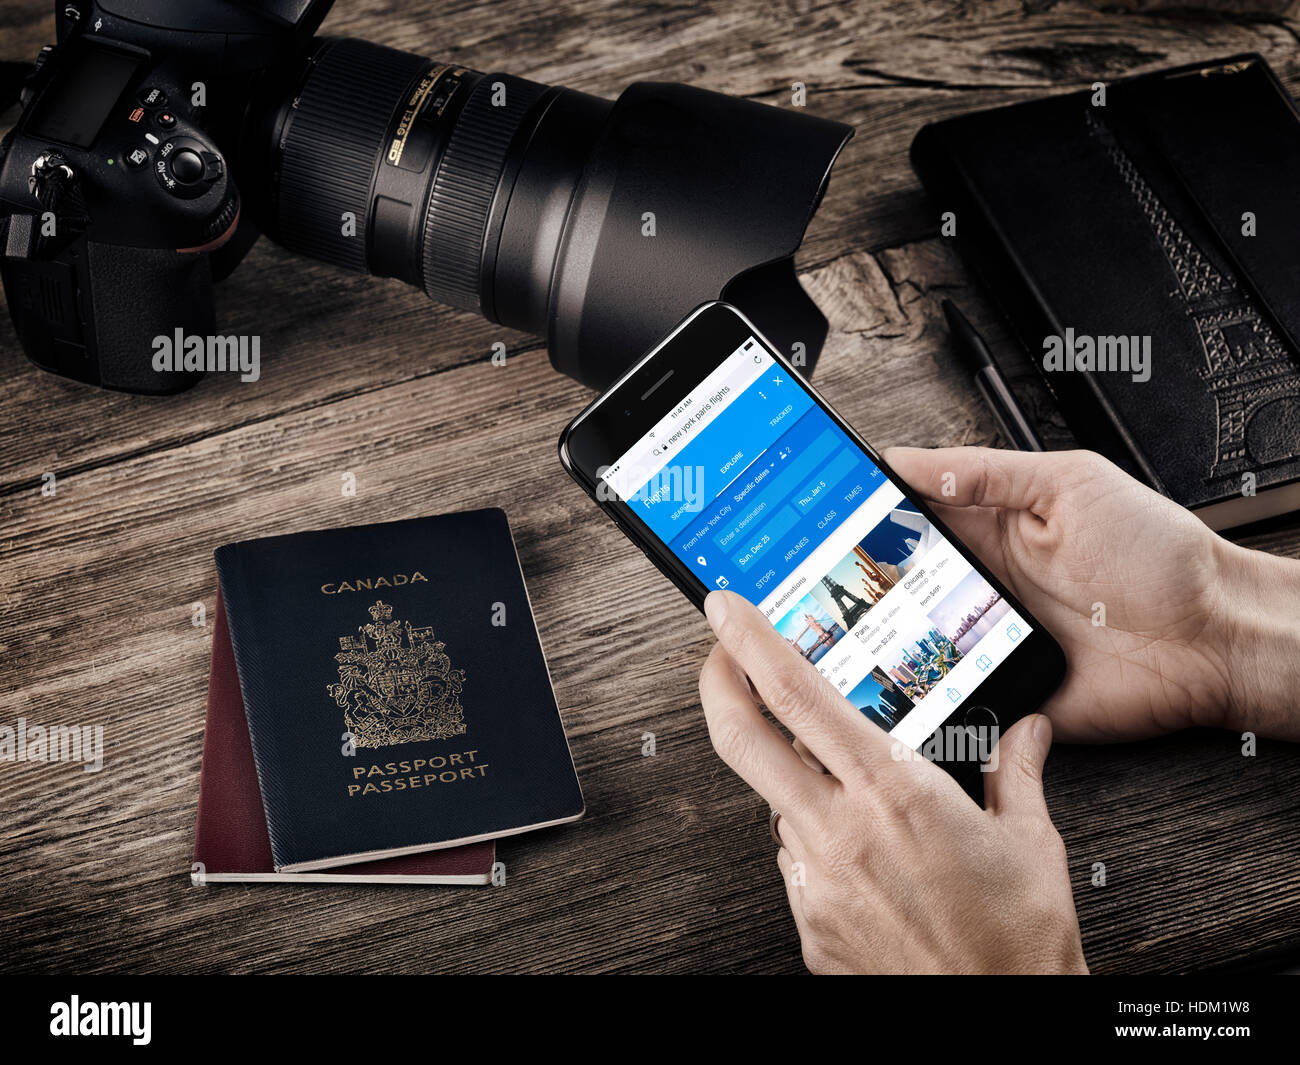 Mujer de manos con Apple iPhone 7 mostrar información de vuelo sobre una mesa con los pasaportes, una cámara y un cuaderno, viajando todavía vida conceptual Foto de stock